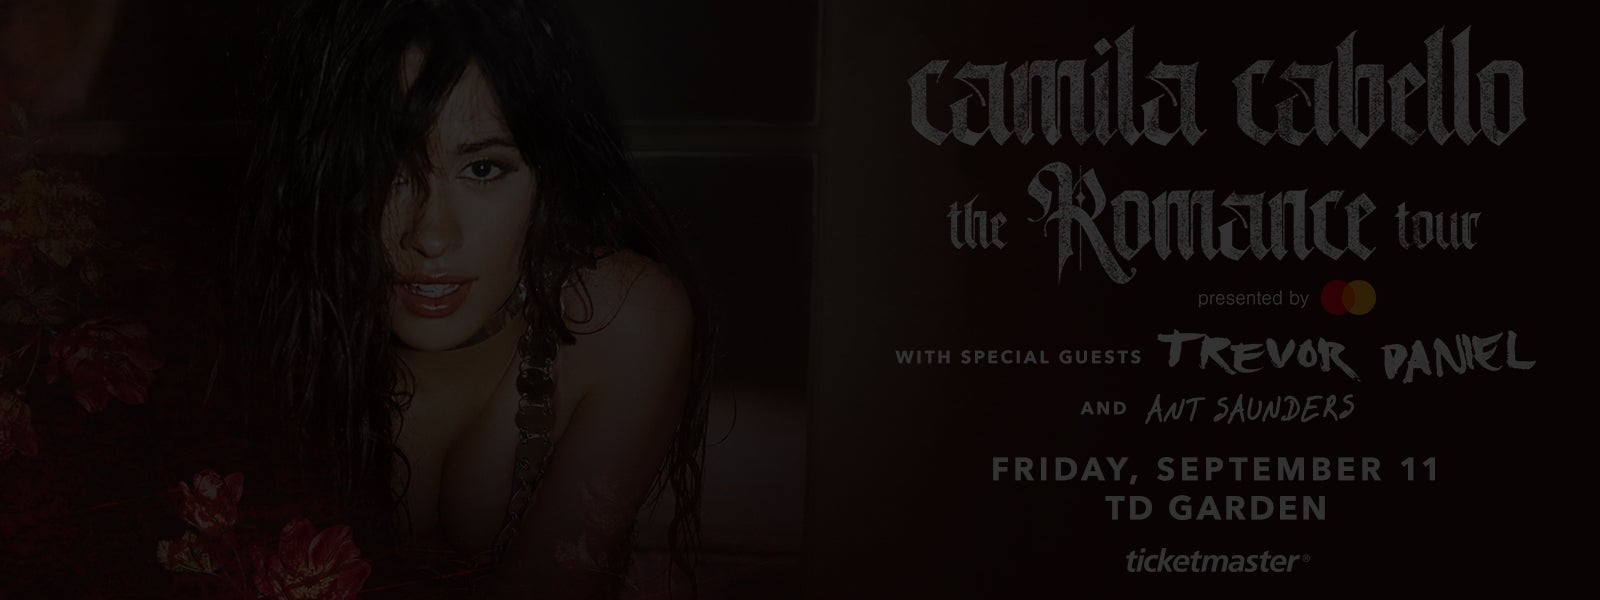 Camila Cabello - Canceled